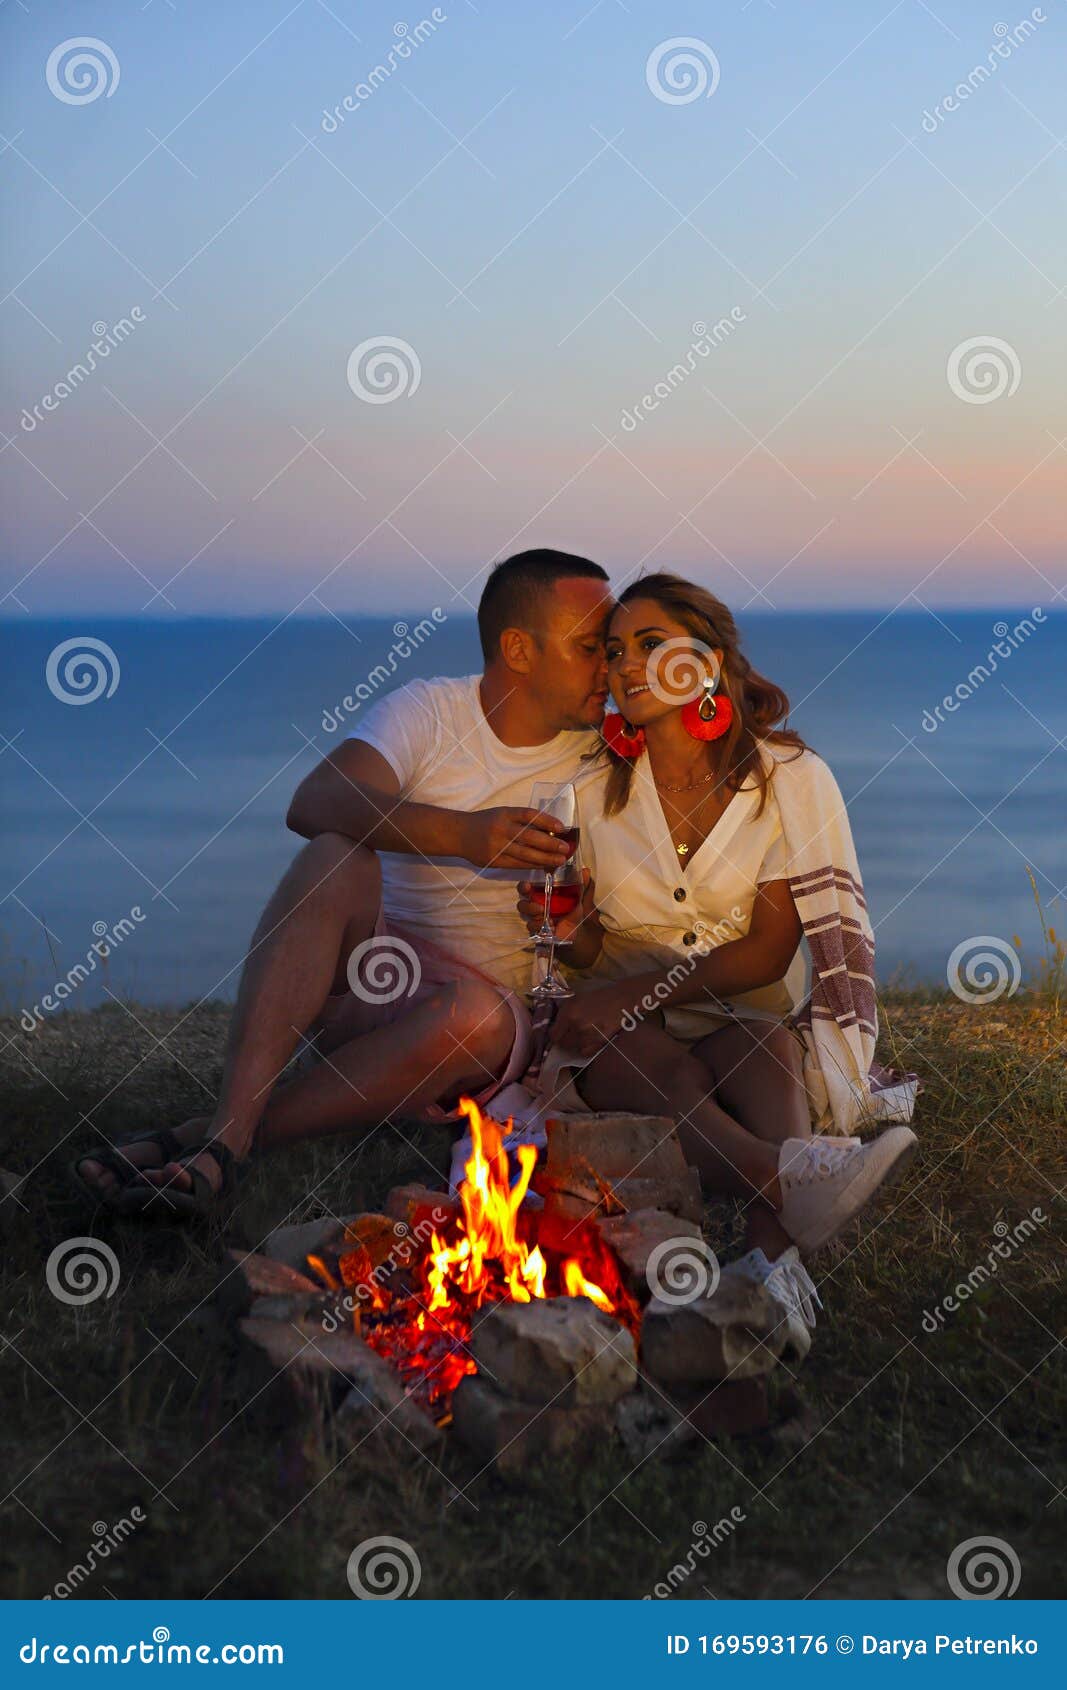 FREE FIRE em 2023  Fotos de casais apaixonados, Fotos de casais